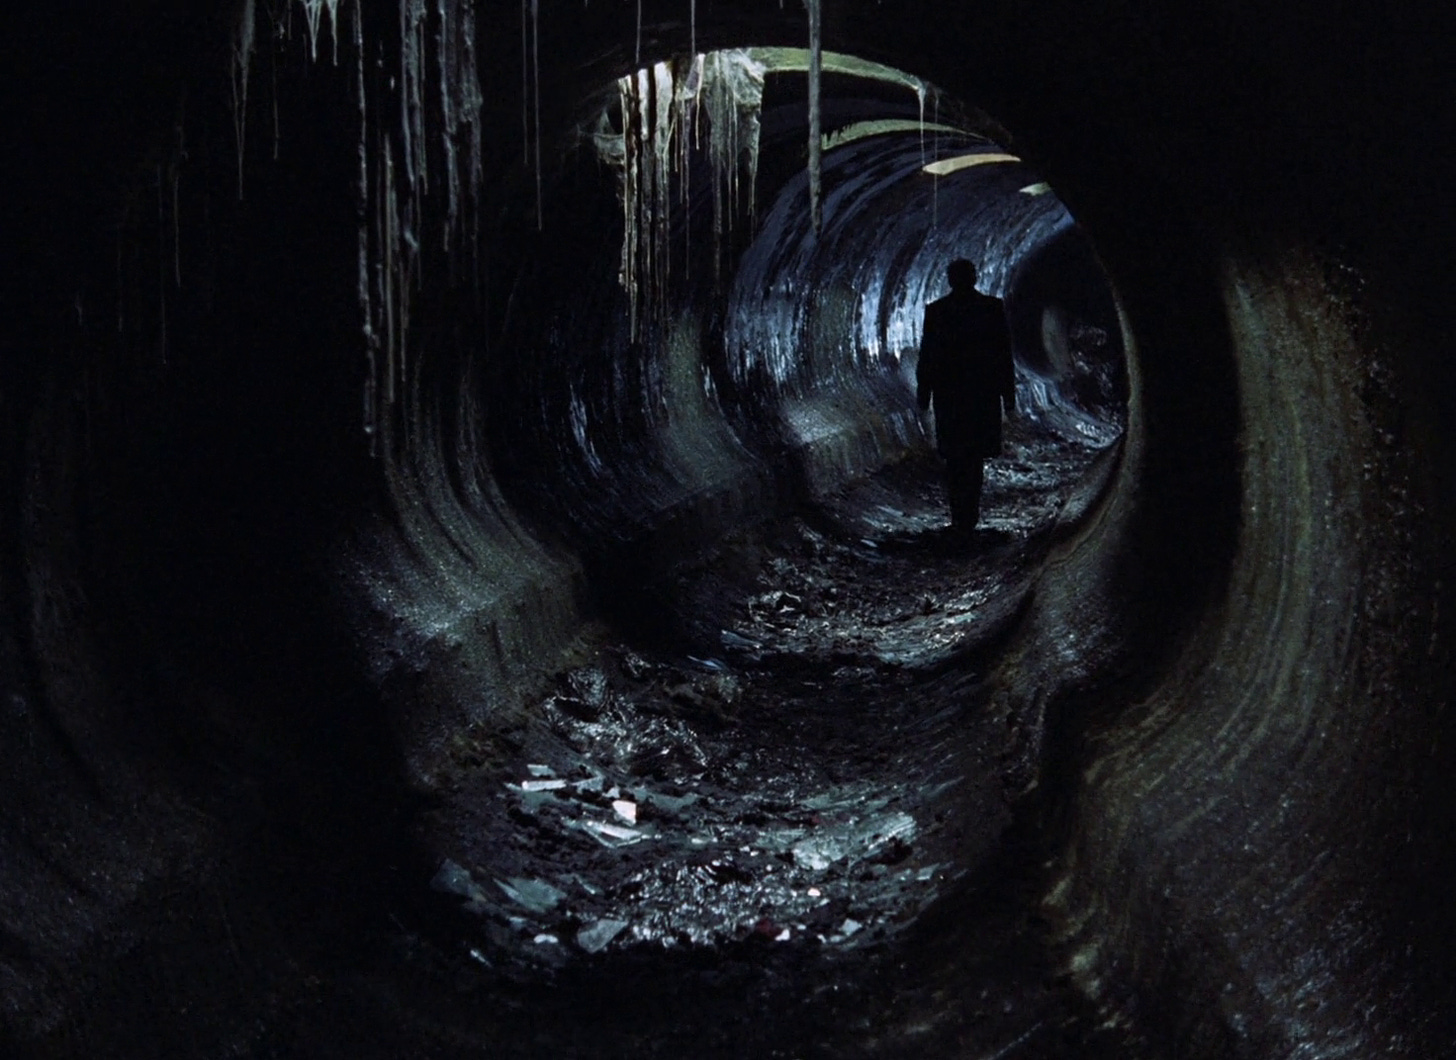 fotogramma tratto da Stalker, un film del 1979 di Andrei Tarkovsky, che ritrae un uomo dileguarsi giù per un umido tunnel